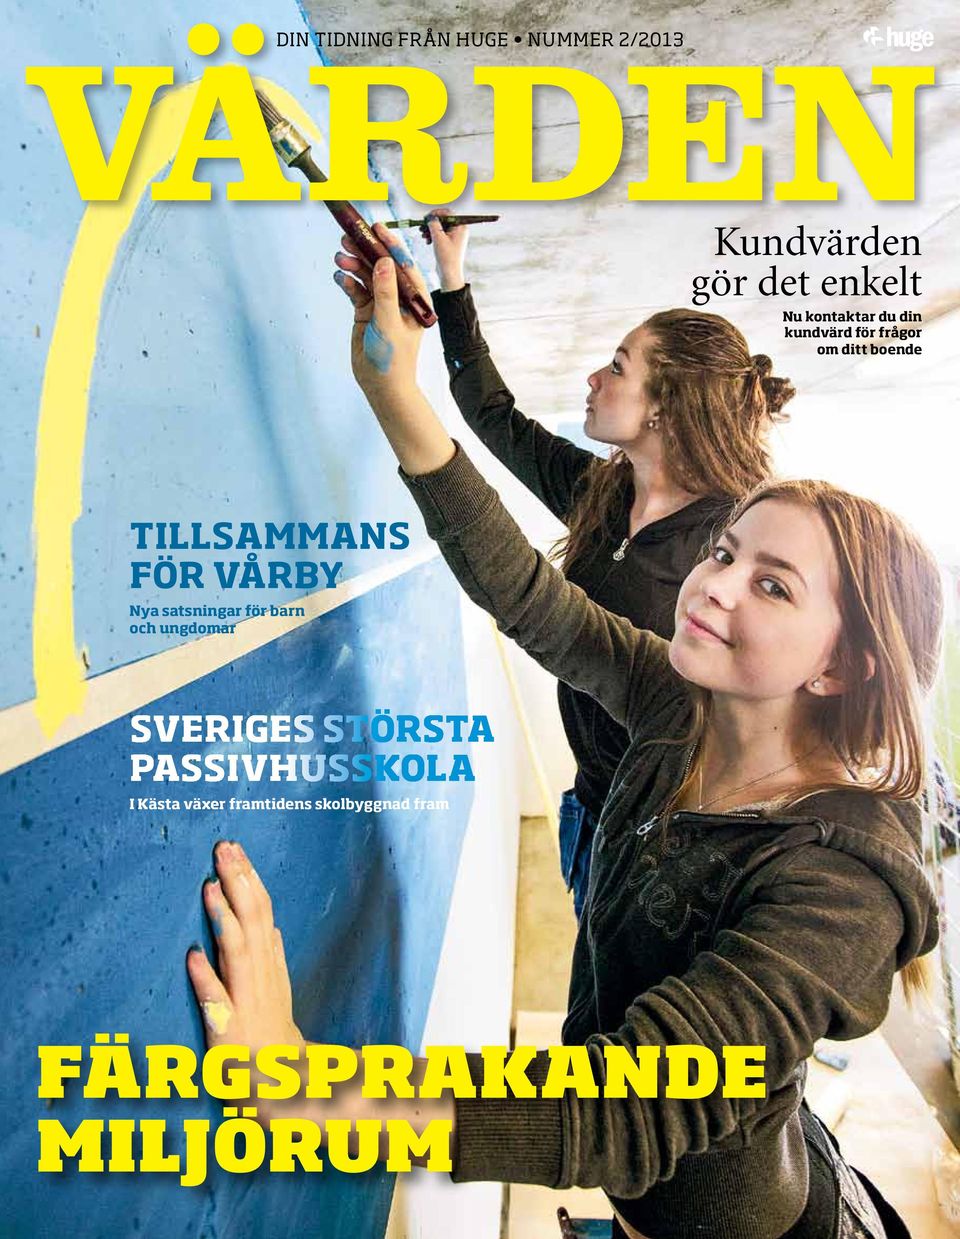 för Vårby Nya satsningar för barn och ungdomar Sveriges största